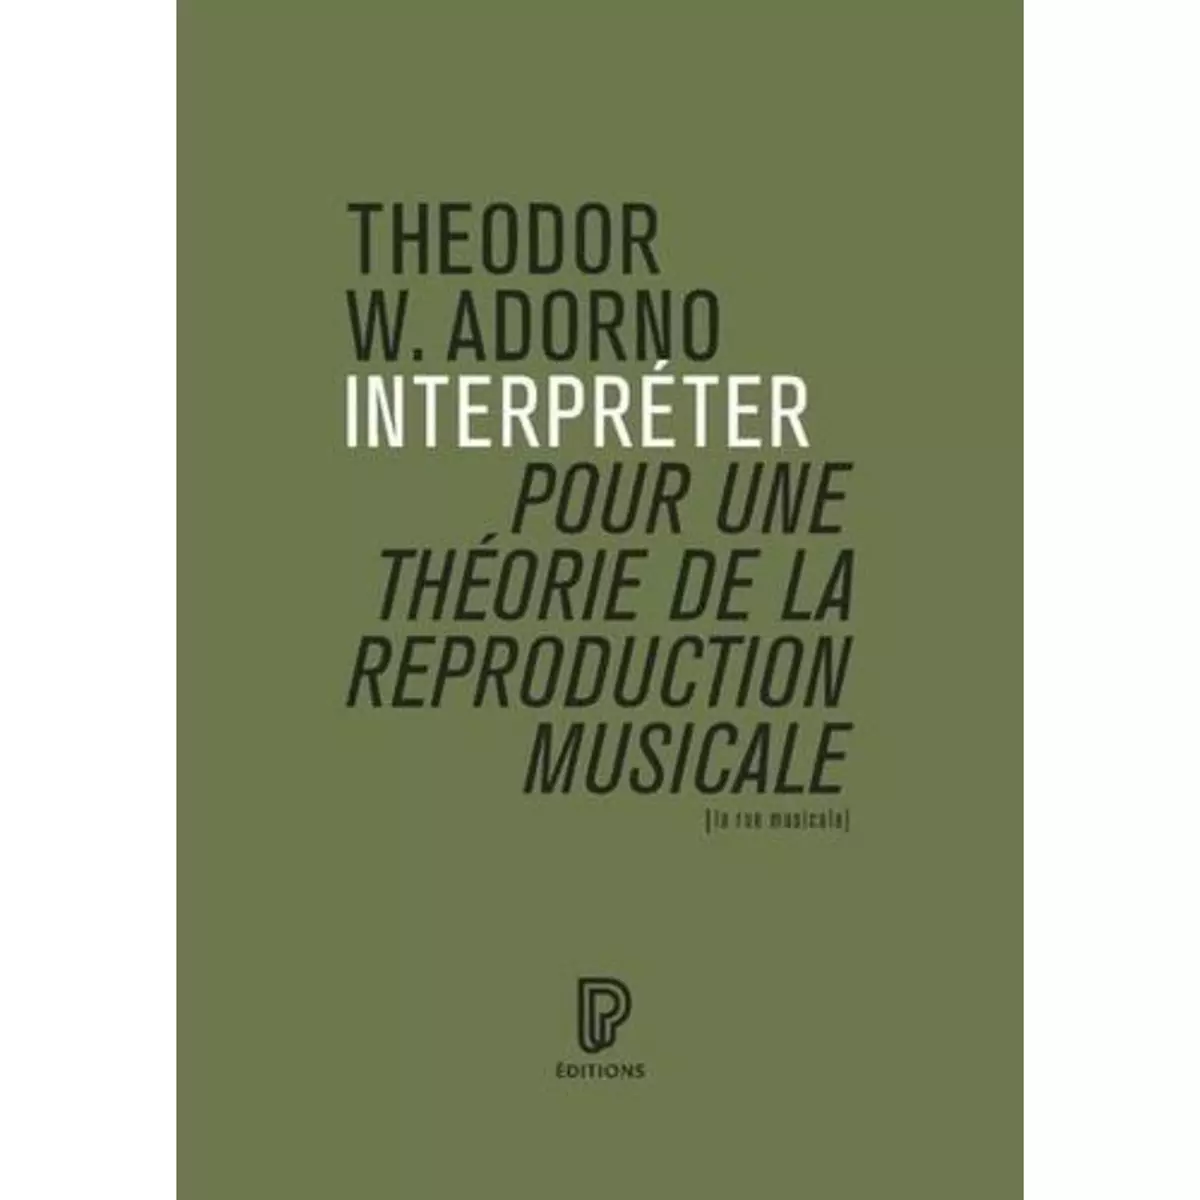  INTERPRETER, POUR UNE THEORIE DE LA REPRODUCTION MUSICALE, Adorno Theodor W.